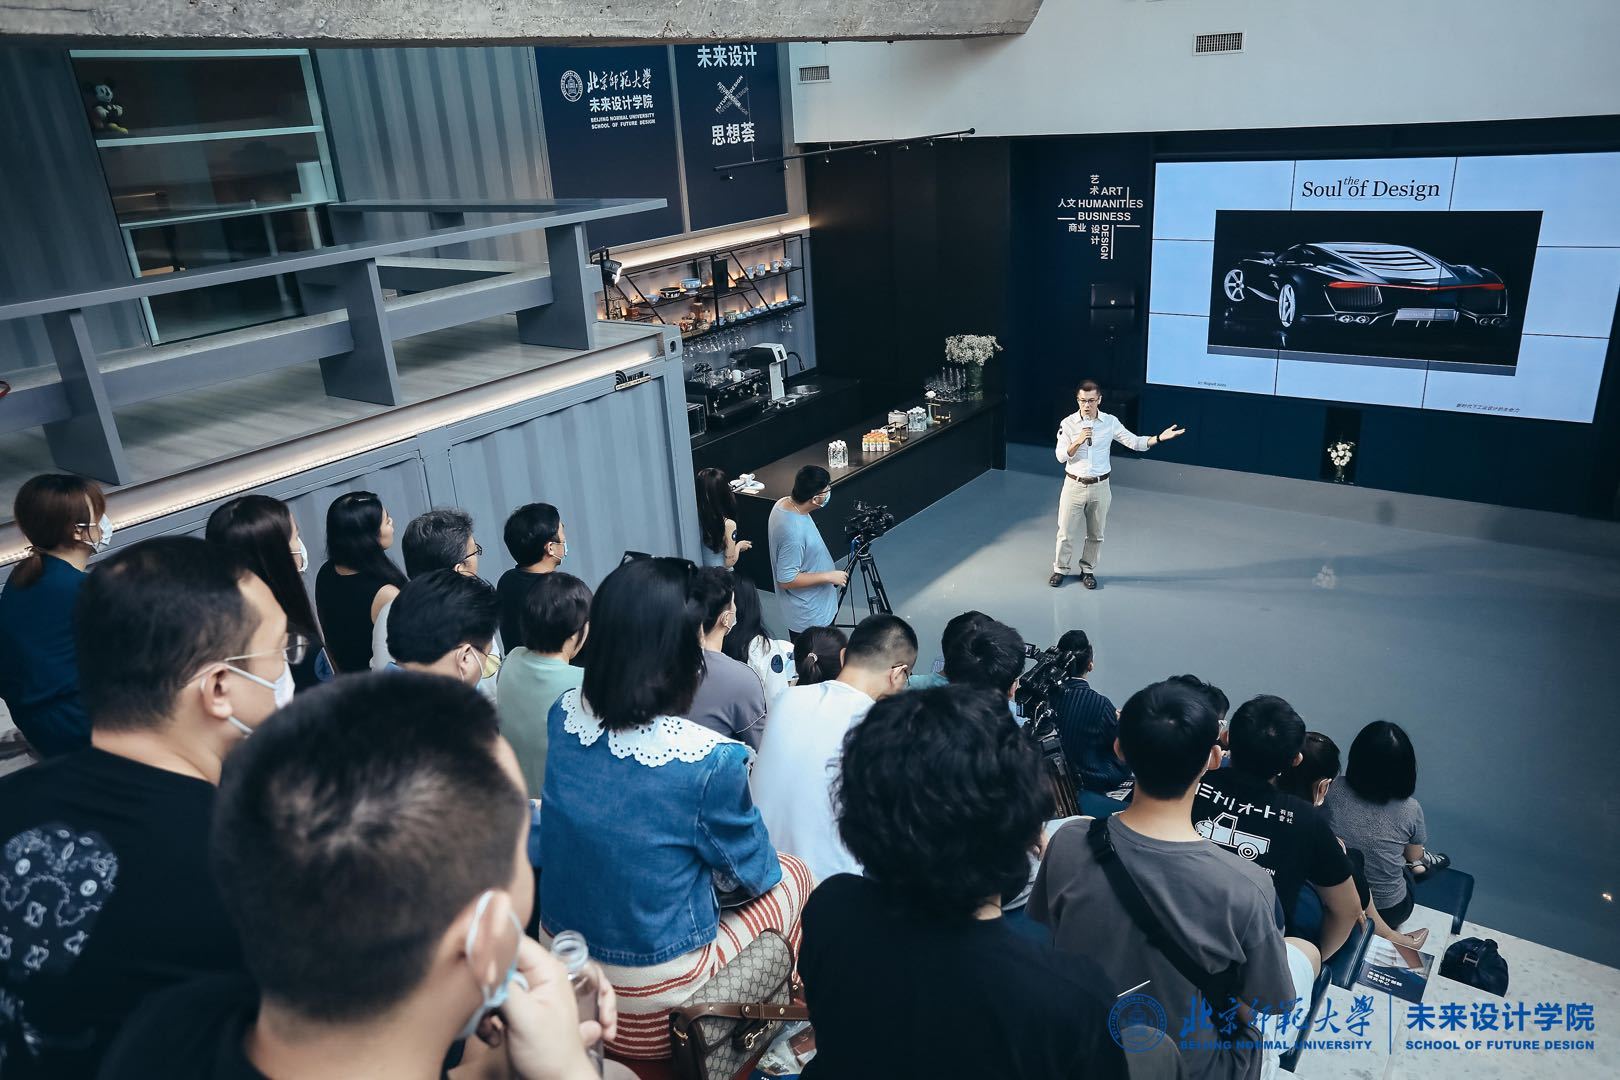 北京师范大学未来设计学院探讨跨学科设计教育